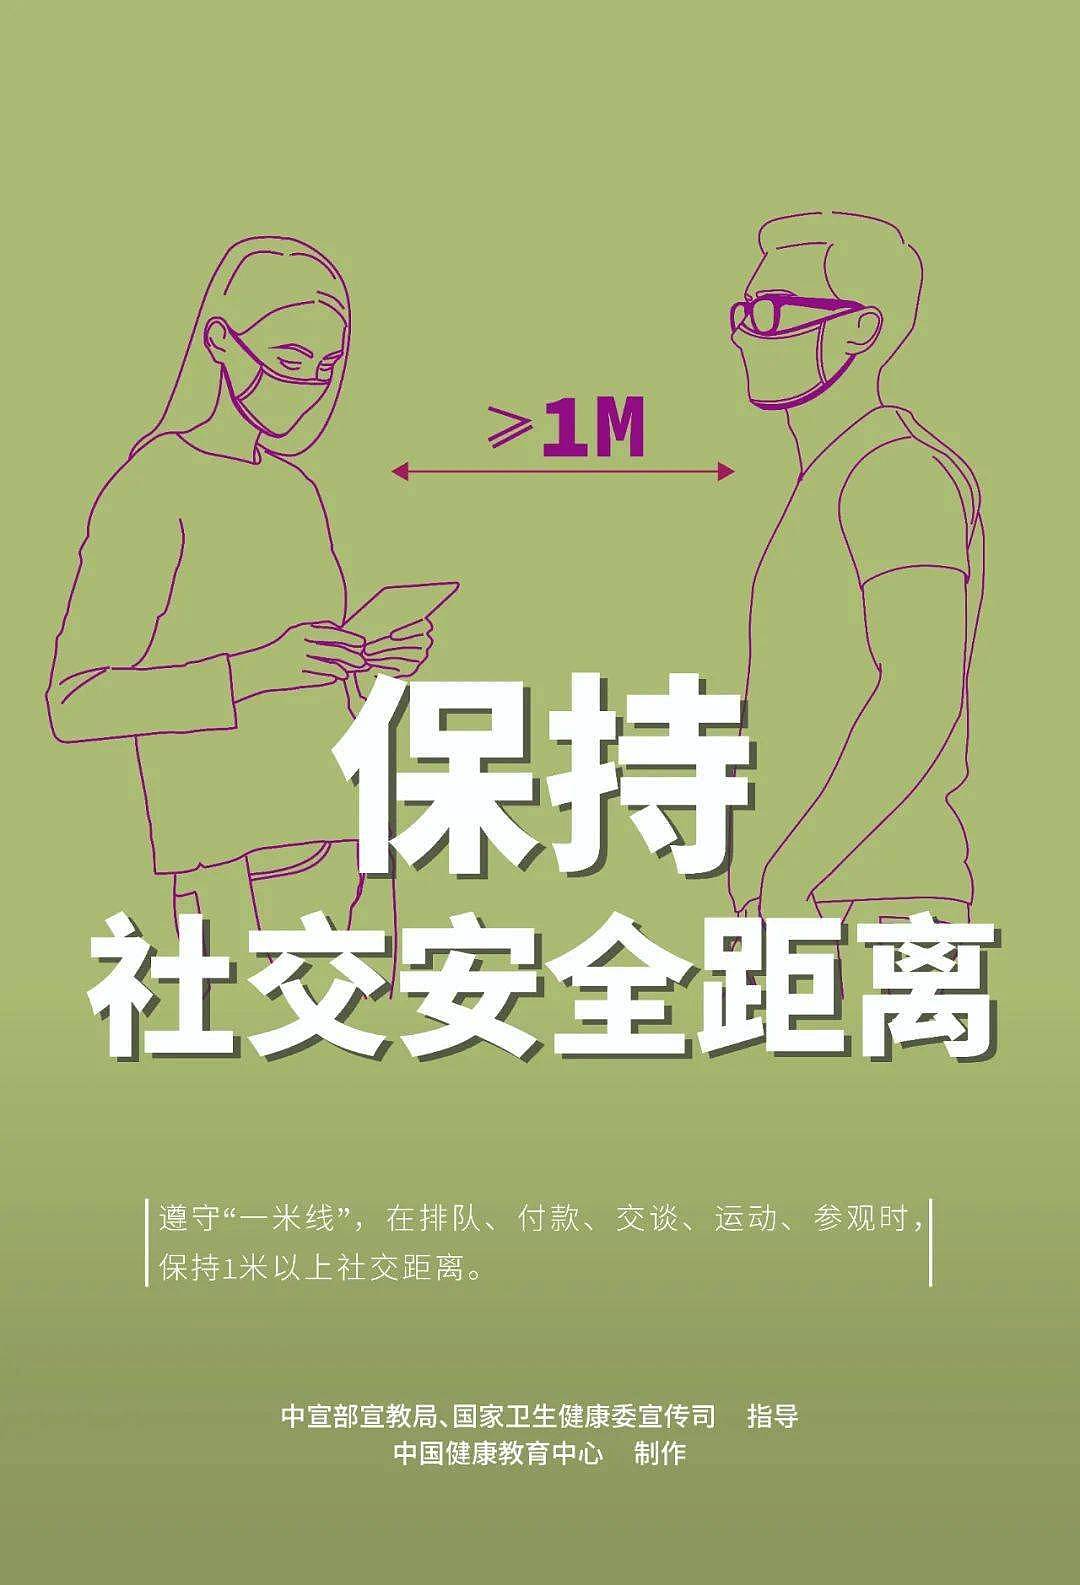 【疫情防控】新冠肺炎疫情防护知识宣传海报 - 5